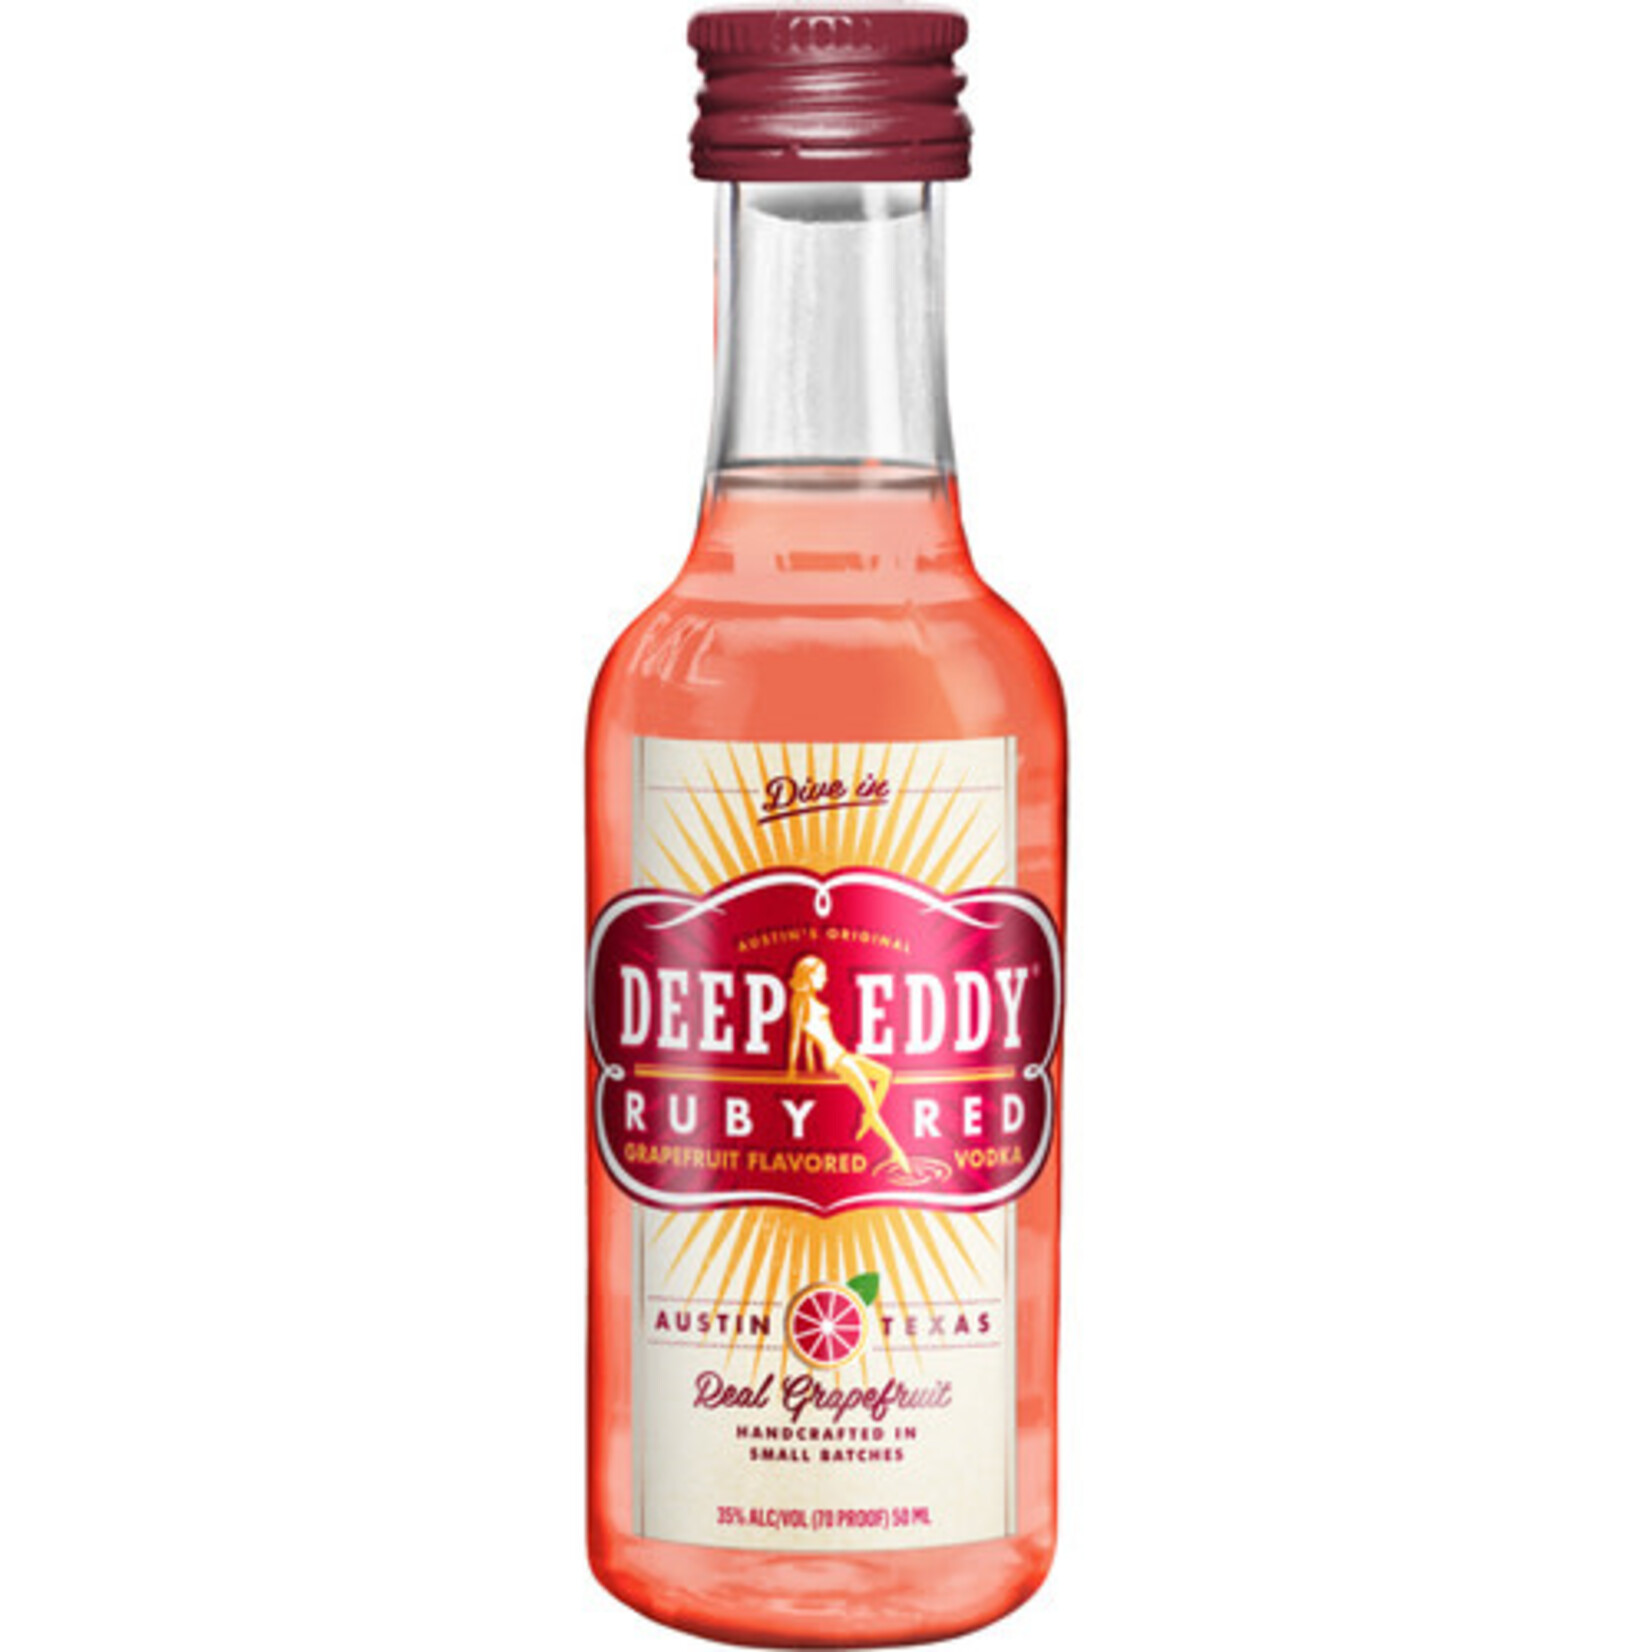 Deep Eddy Deep Eddy Ruby Red Grapefruit Vodka